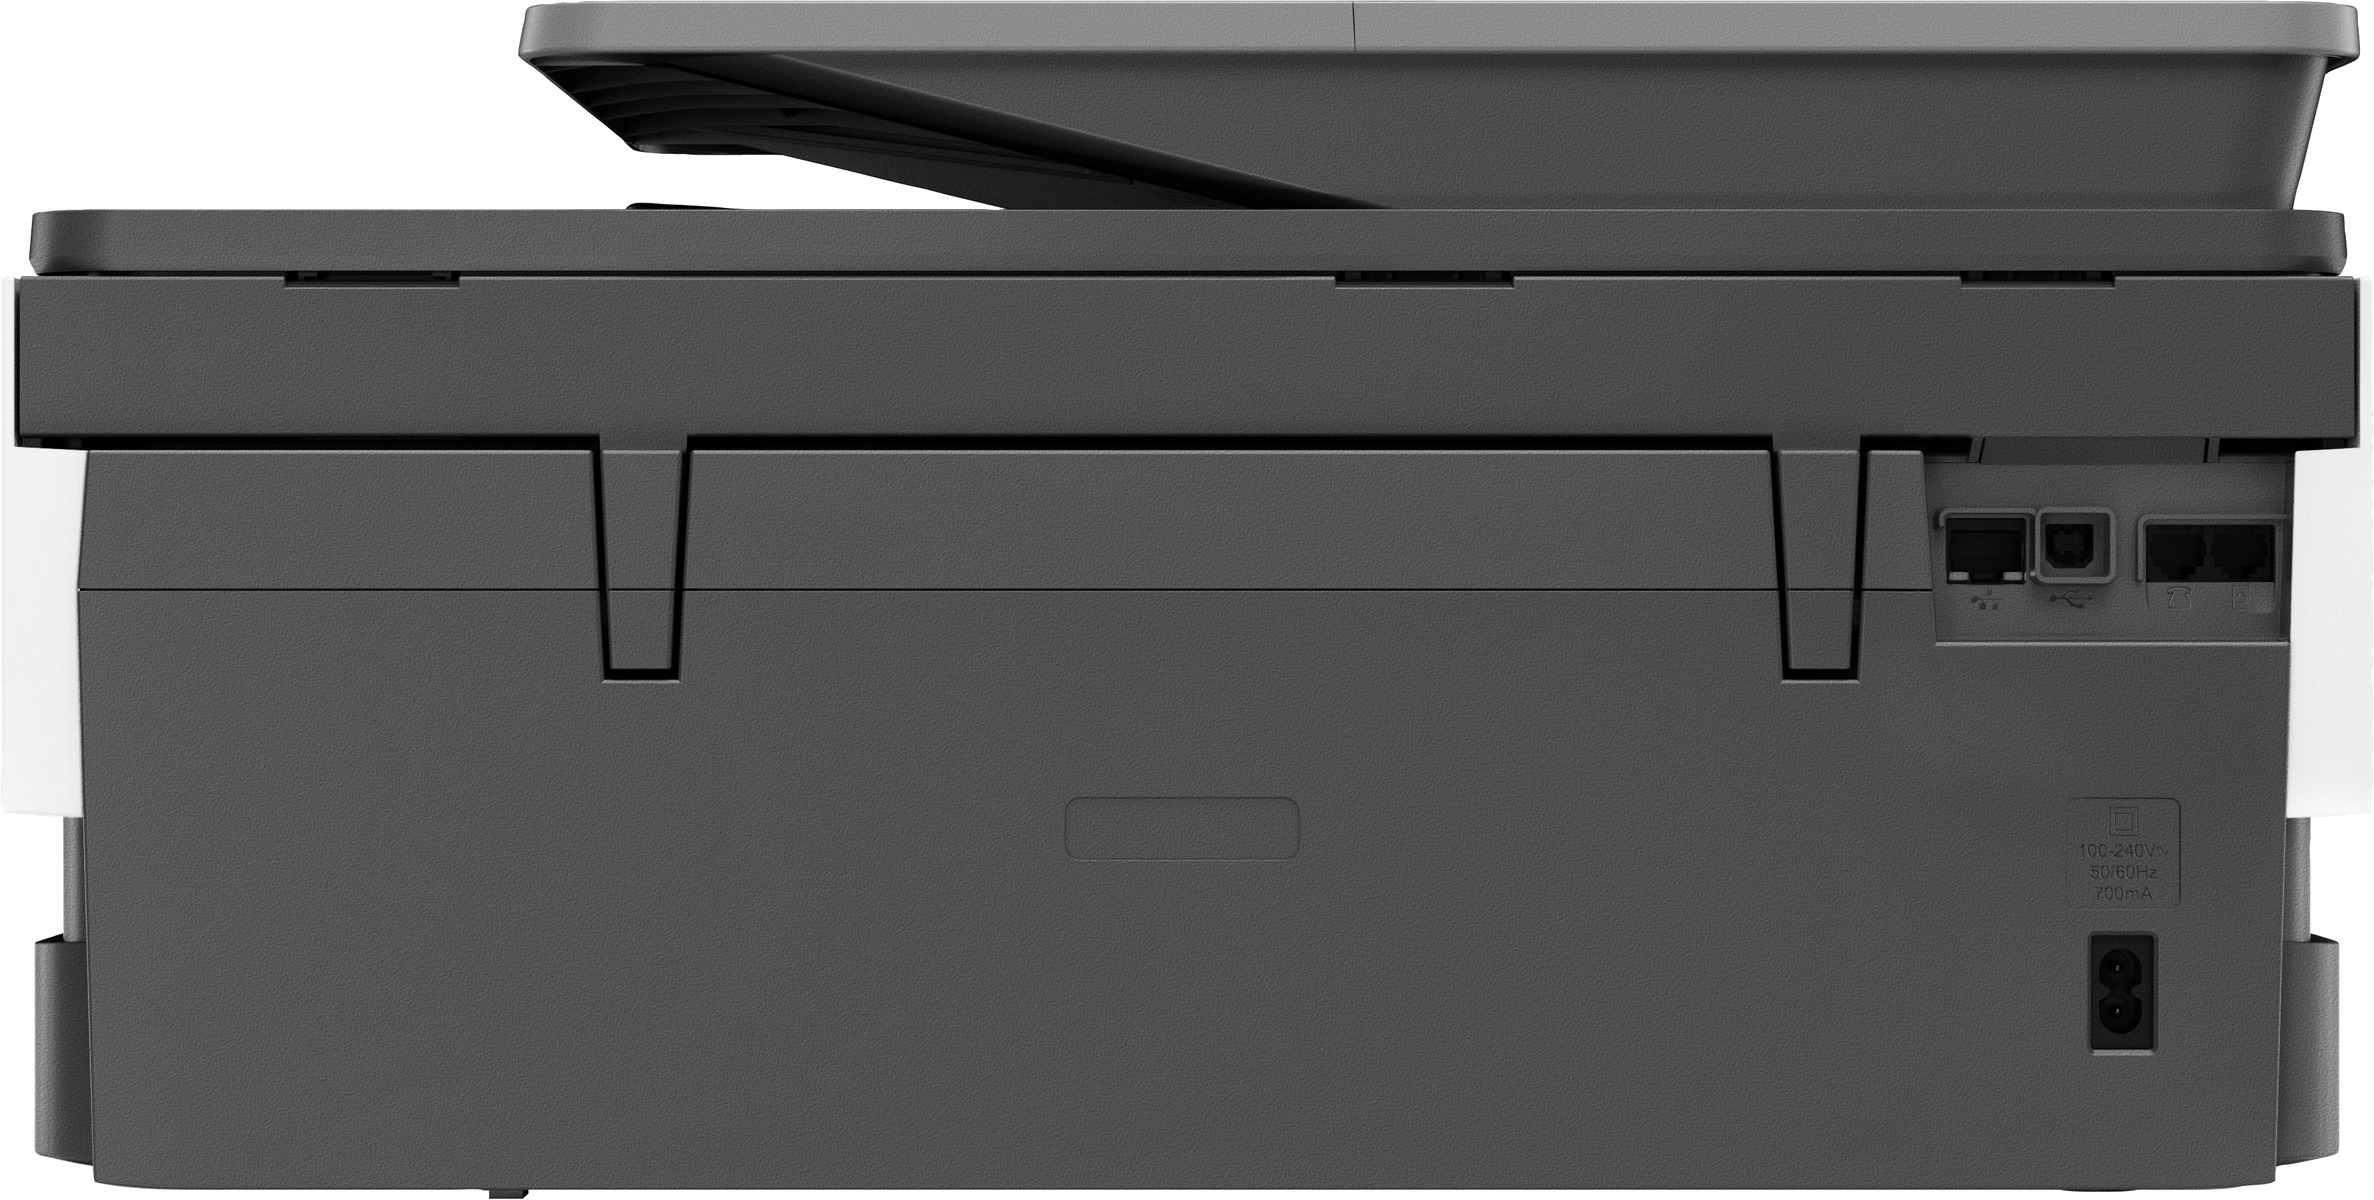 8014 Multifunktionsdrucker HP Thermal WLAN Inkjet ALL-IN-ONE OFFICEJET